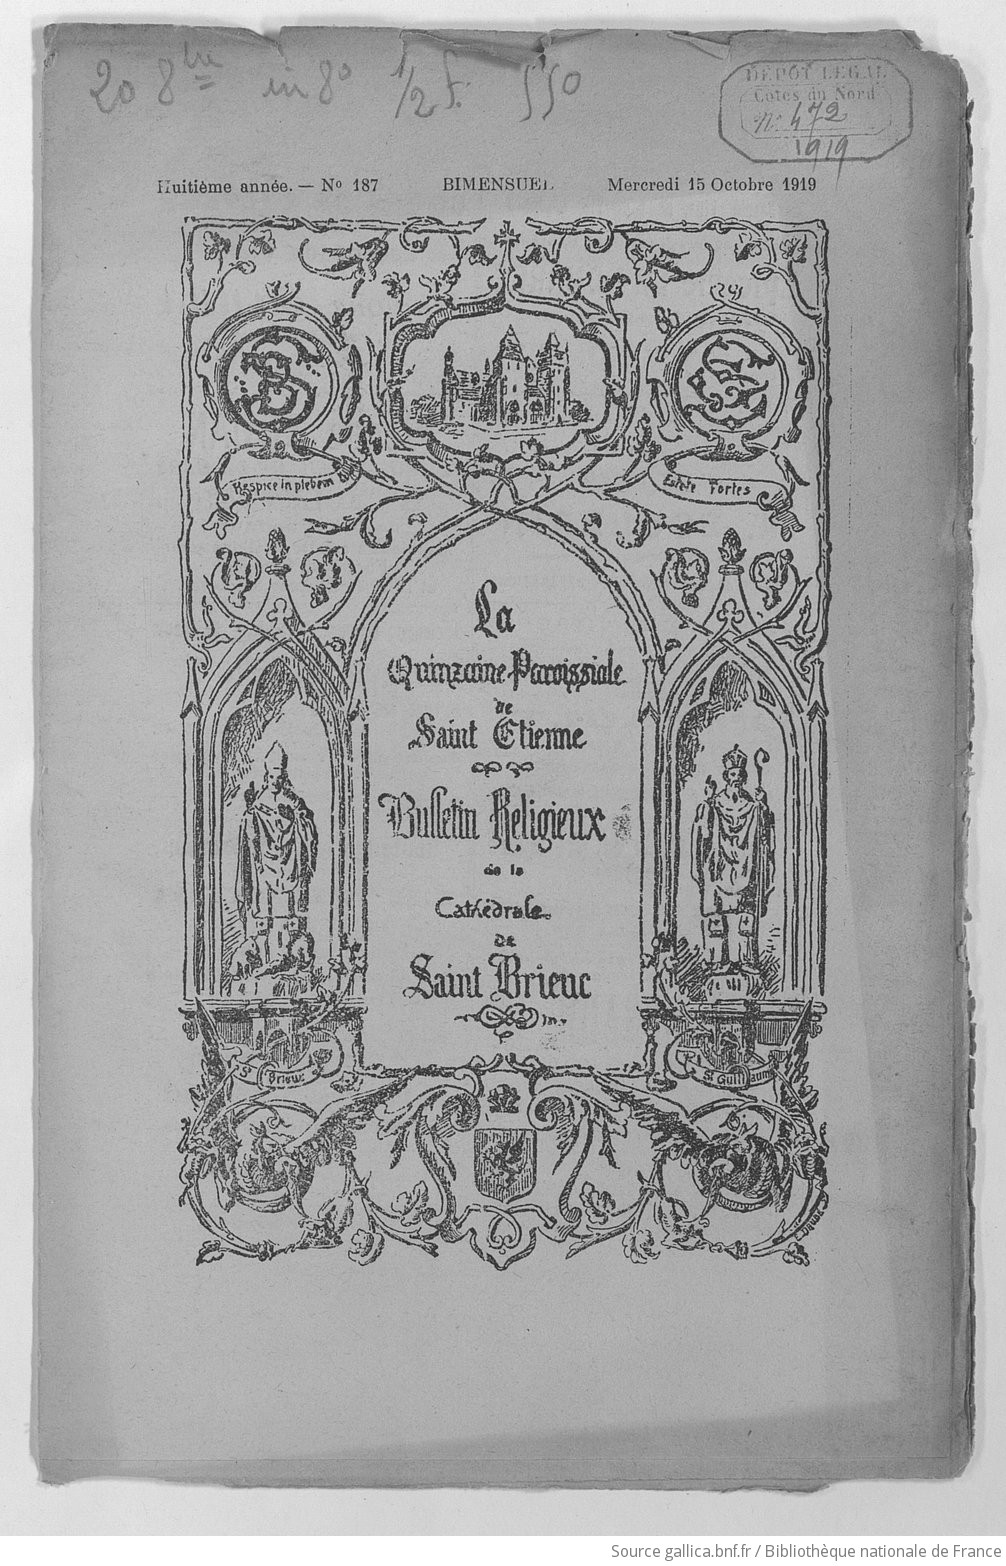 Bulletin paroissial de Saint-Brieuc -  paroisse de Saint-Étienne - mercredi 15 octobre 1919 | 